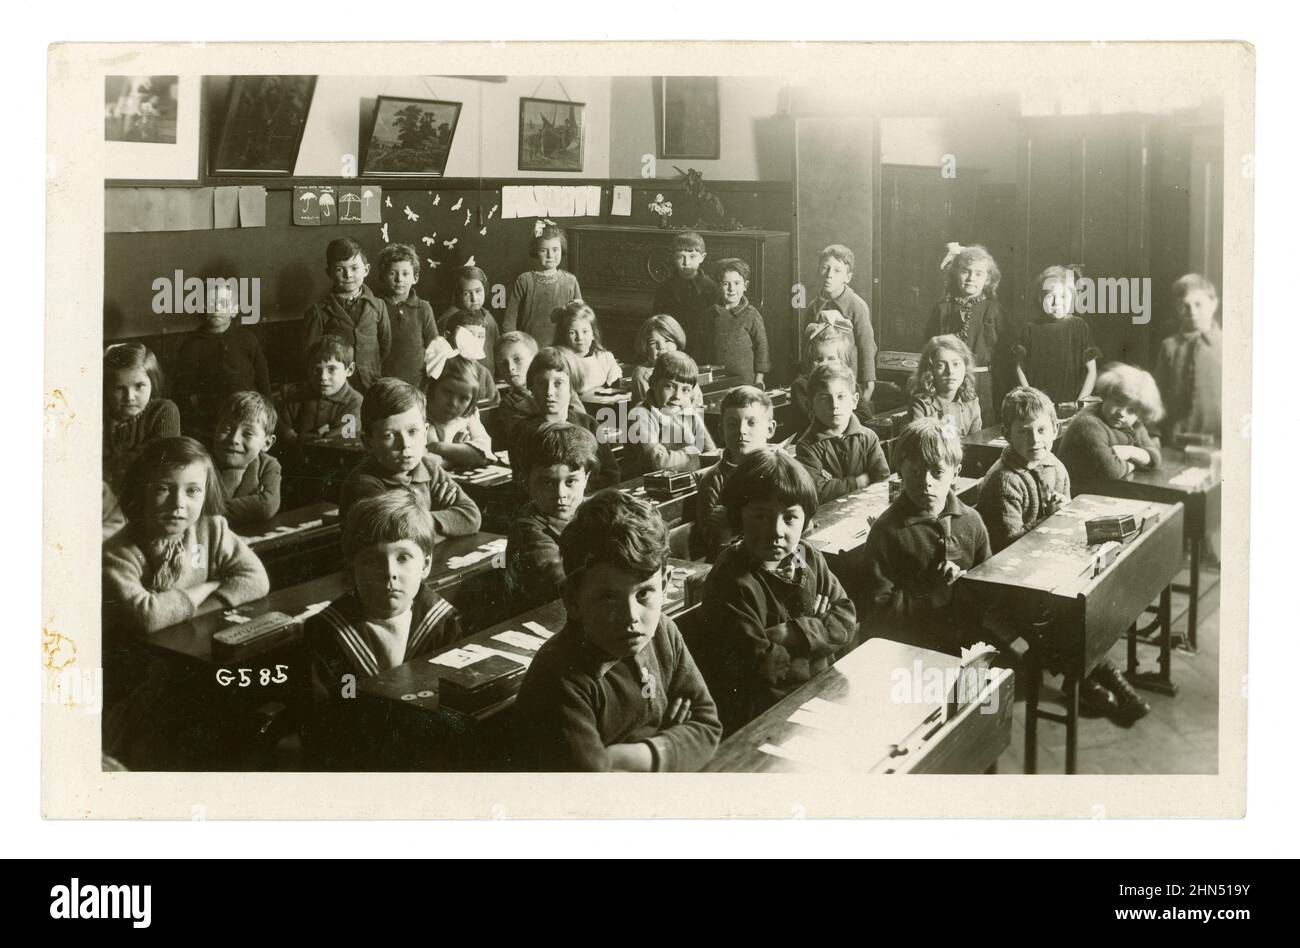 Carte postale originale du début des années 1920, de jeunes garçons et de jeunes filles qui ont l'air bien élevés, assis dans des rangées de bureaux, bras pliés, dans une salle de classe d'école junior, Worthing, Sussex, Angleterre, Royaume-Uni Banque D'Images